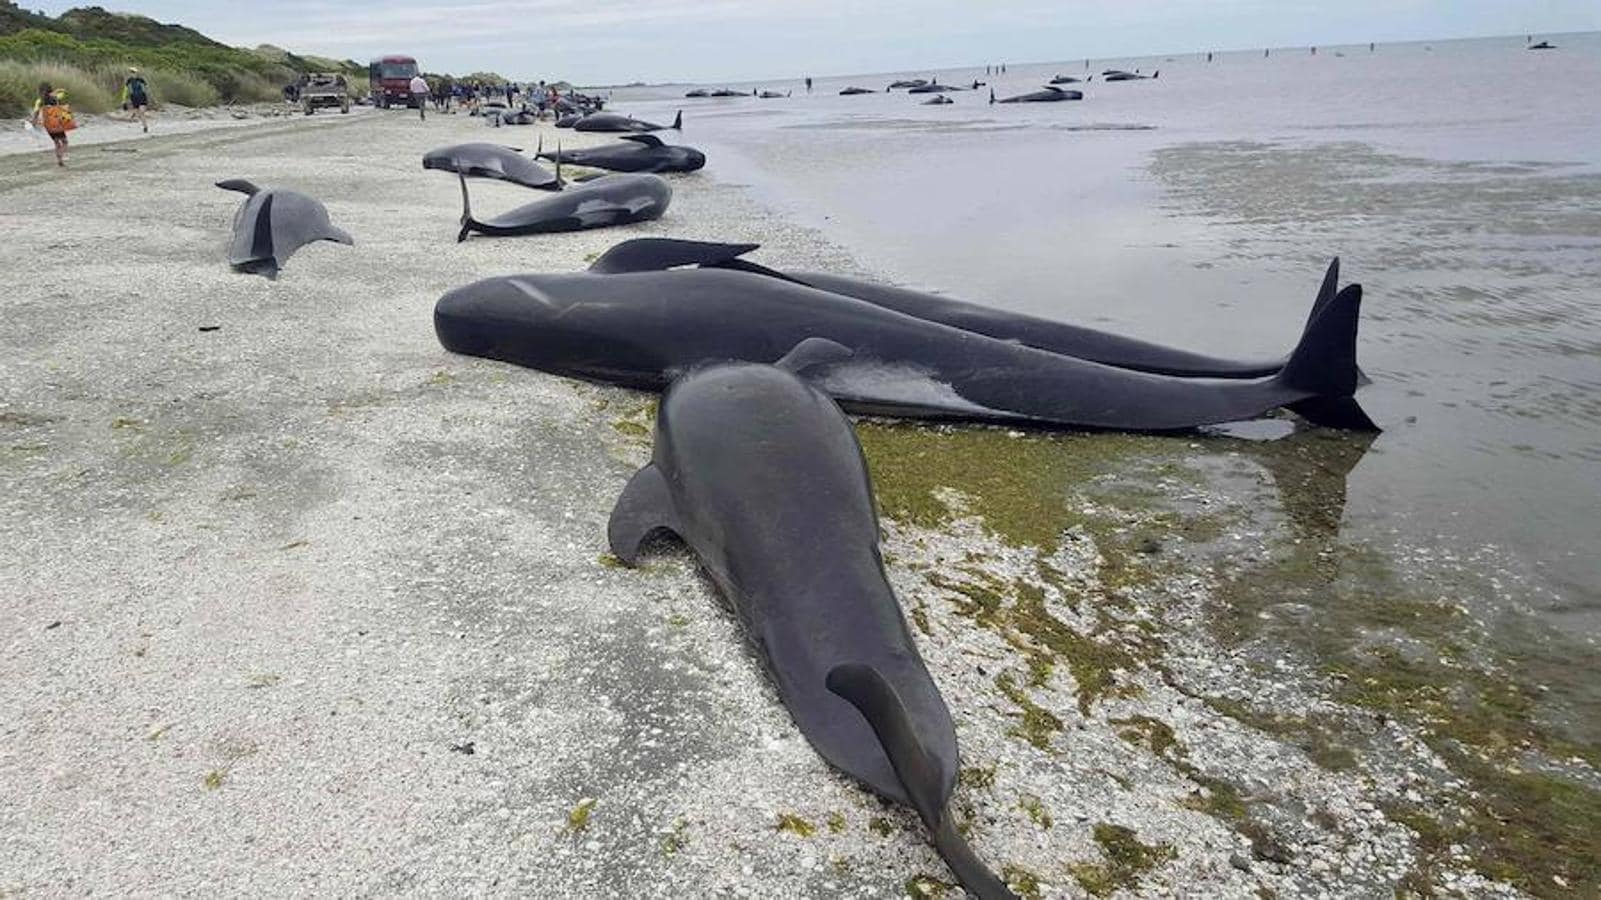 Voluntarios y ecologistas intentan salvar a las ballenas varadas en Farewell Spit, en la isla Sur de Nueva Zelanda